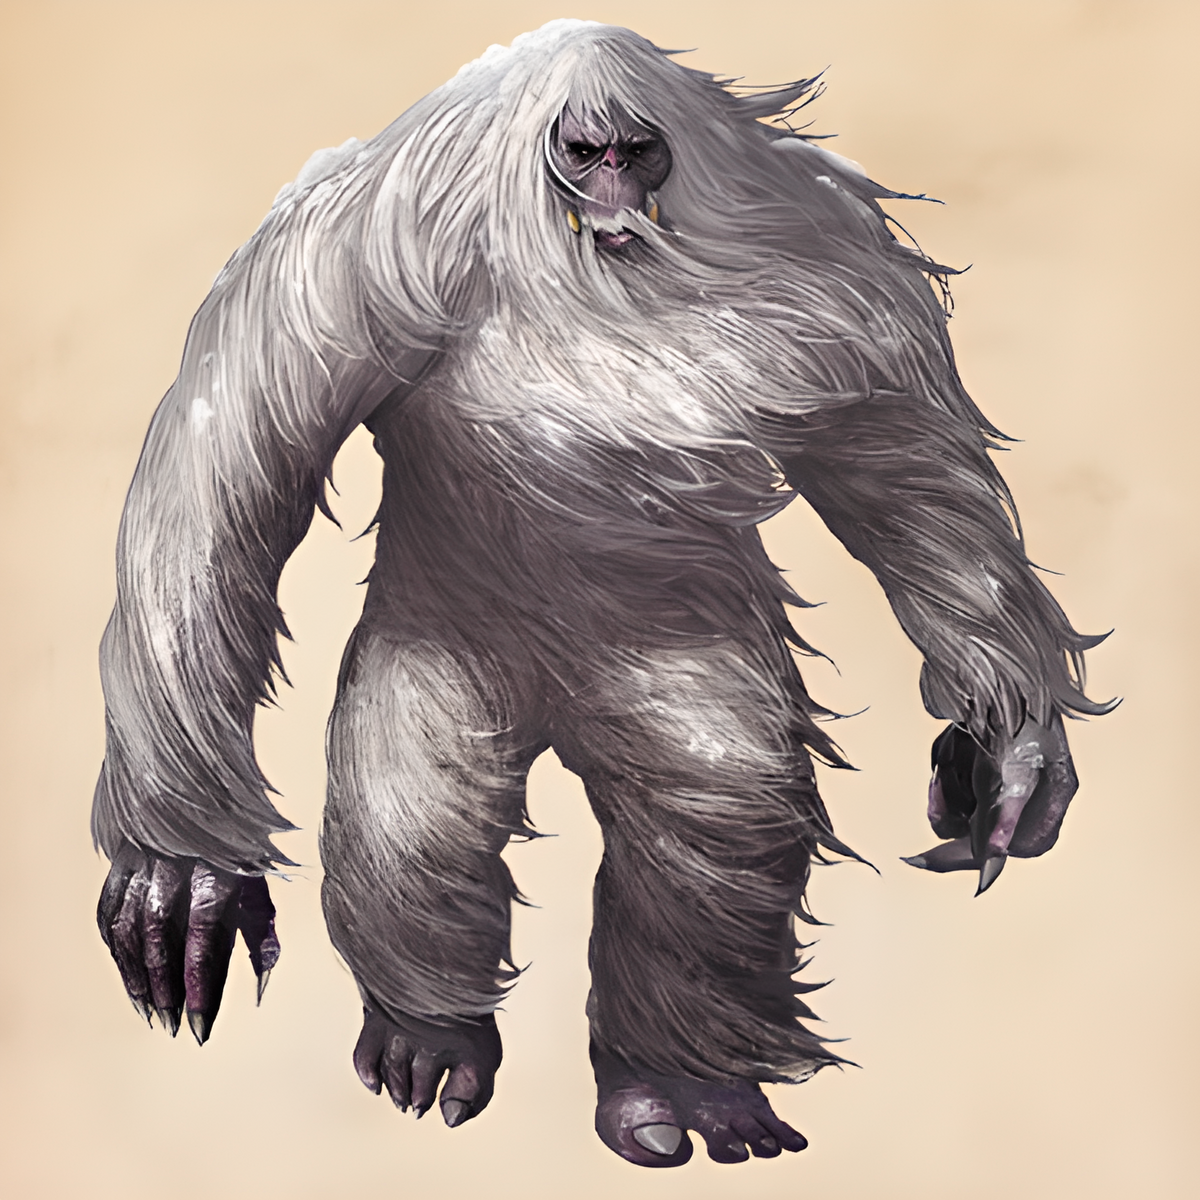 Бигфут сасквоч Йети. Биг фуд монстр Сосквоч. Монстр Bigfoot снежный человек. Как называется чудище